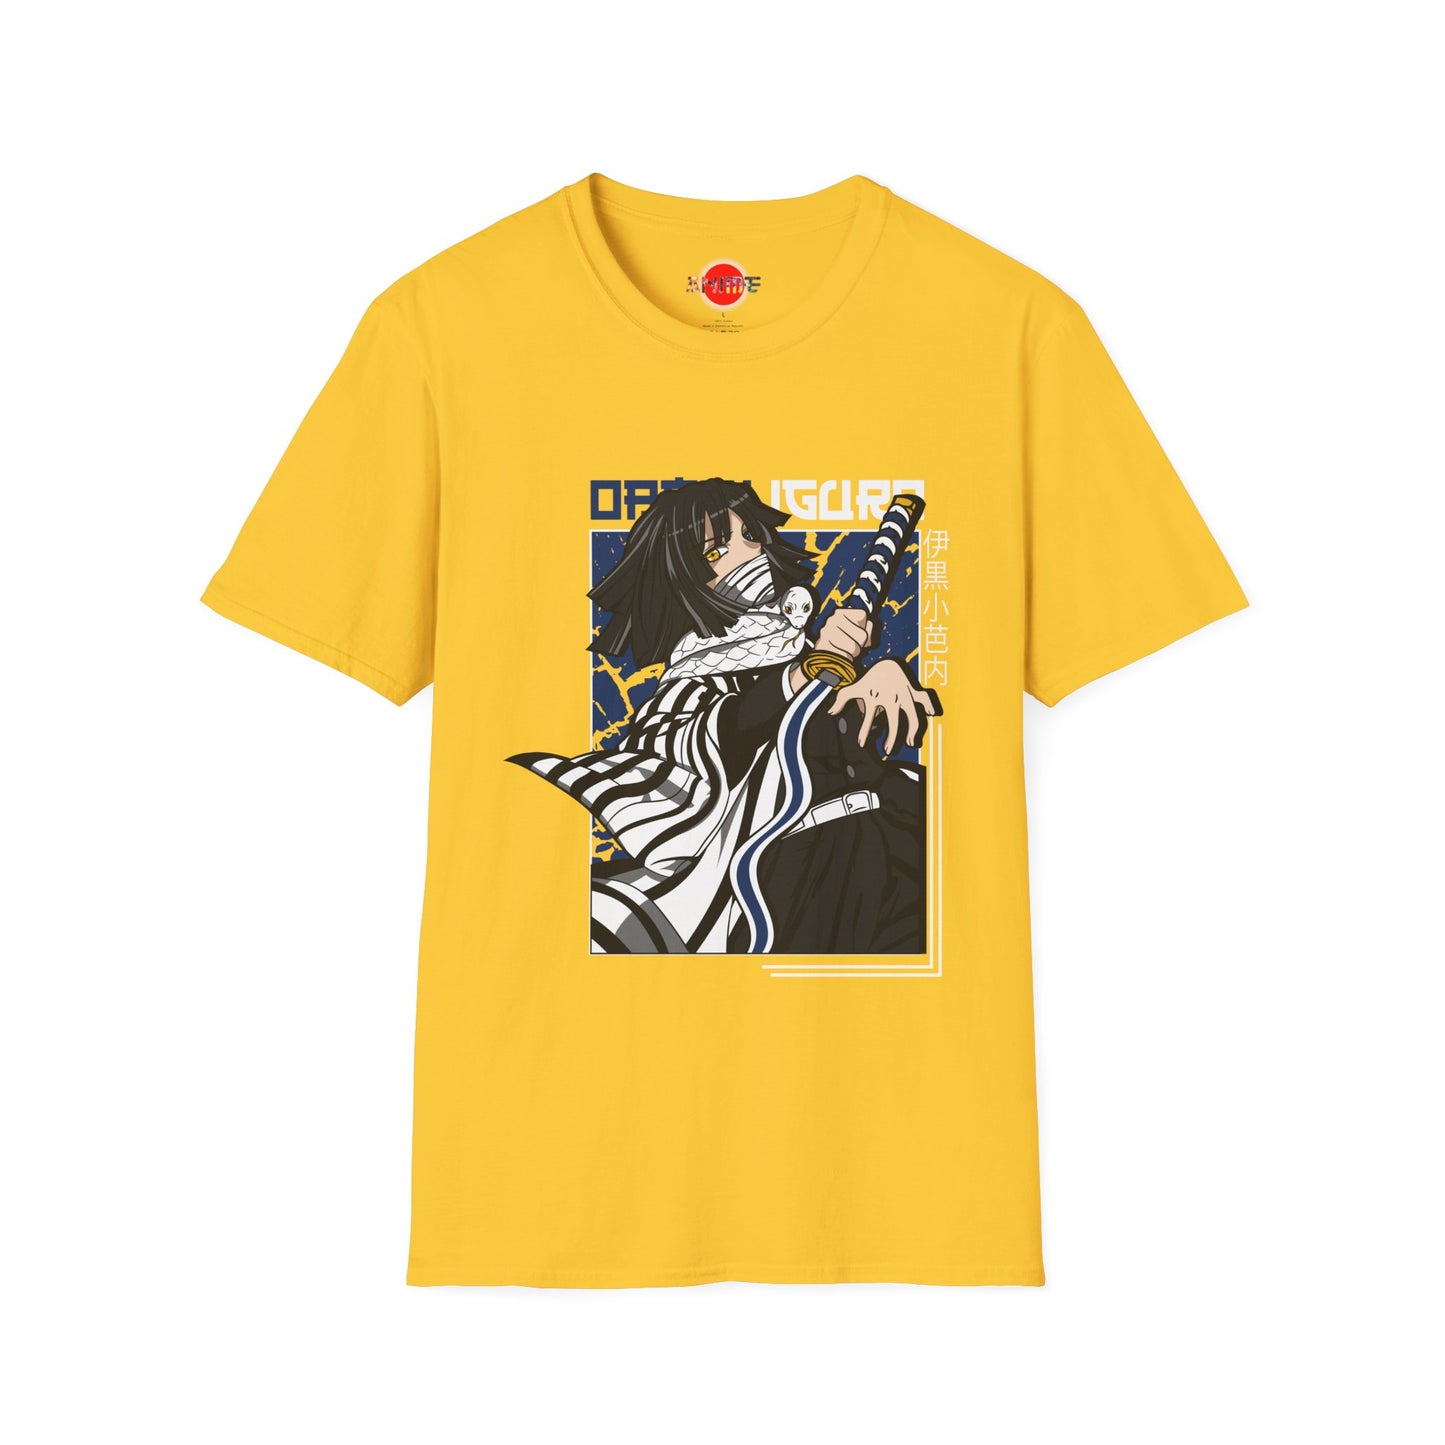 Obanai Iguro DEMON SLAYER New Anime Manga Style Unisex Softstyle T-Shirt